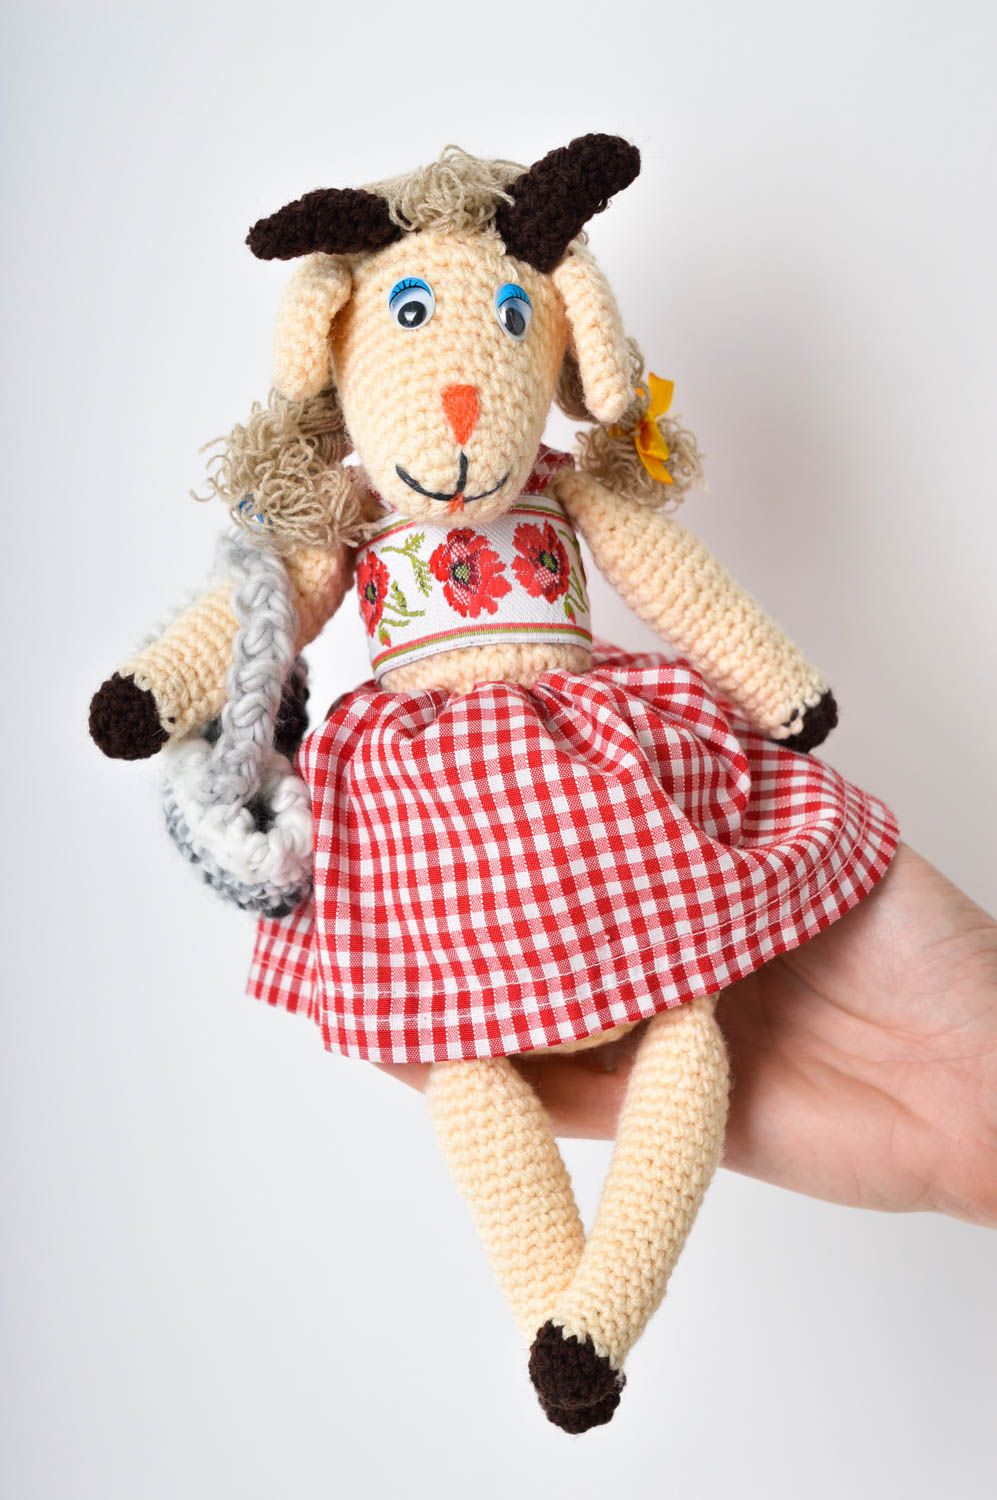 Ziege Kuscheltier Handmade Geburtstag Geschenk Kuschel Tier Textil Spielzeug foto 5